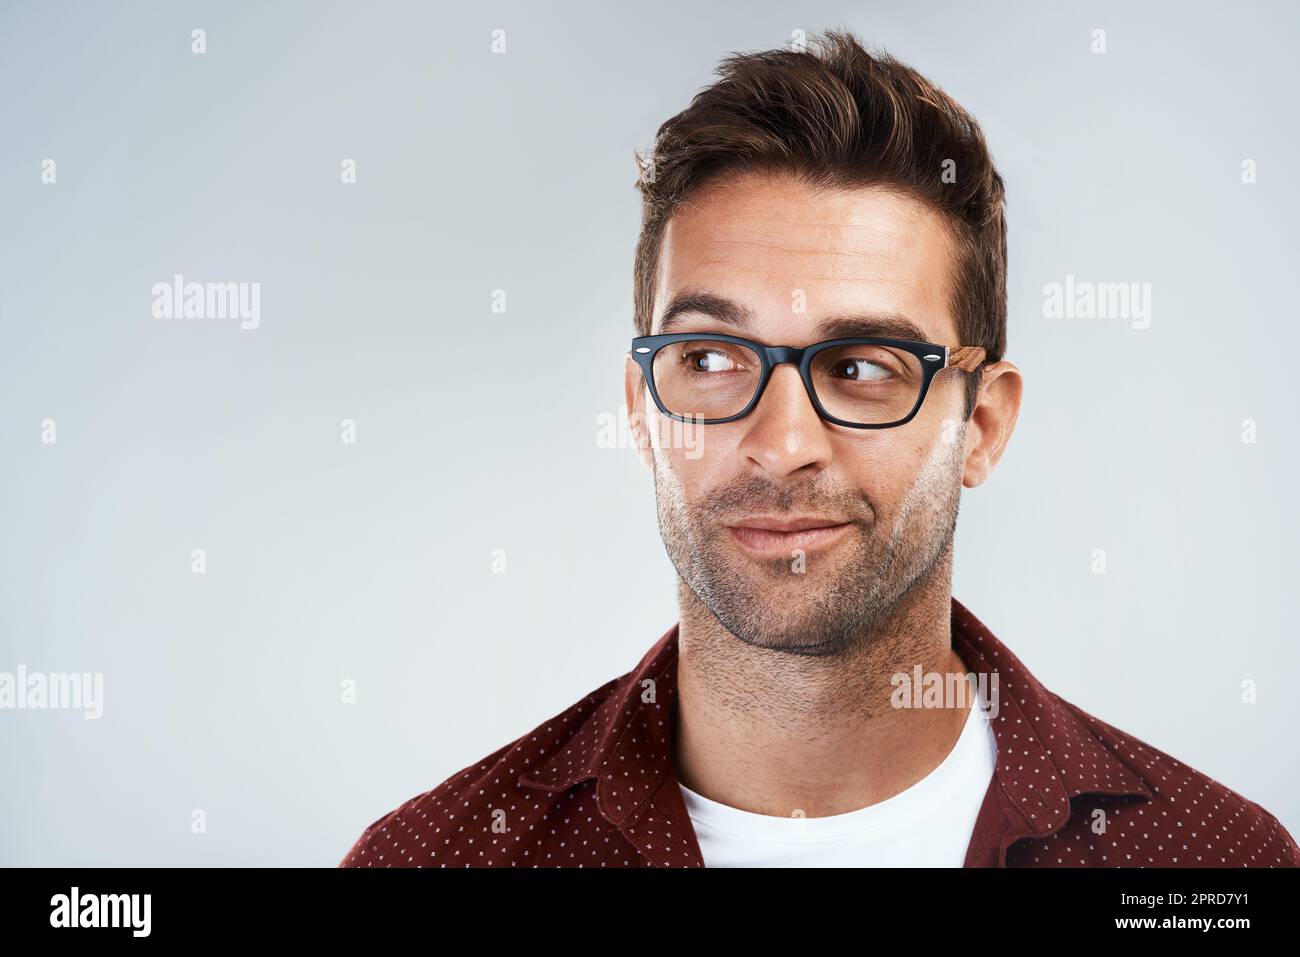 Non sia timido. Ritratto di un giovane allegro che indossa occhiali e sorride brillantemente mentre si alza su uno sfondo grigio. Foto Stock